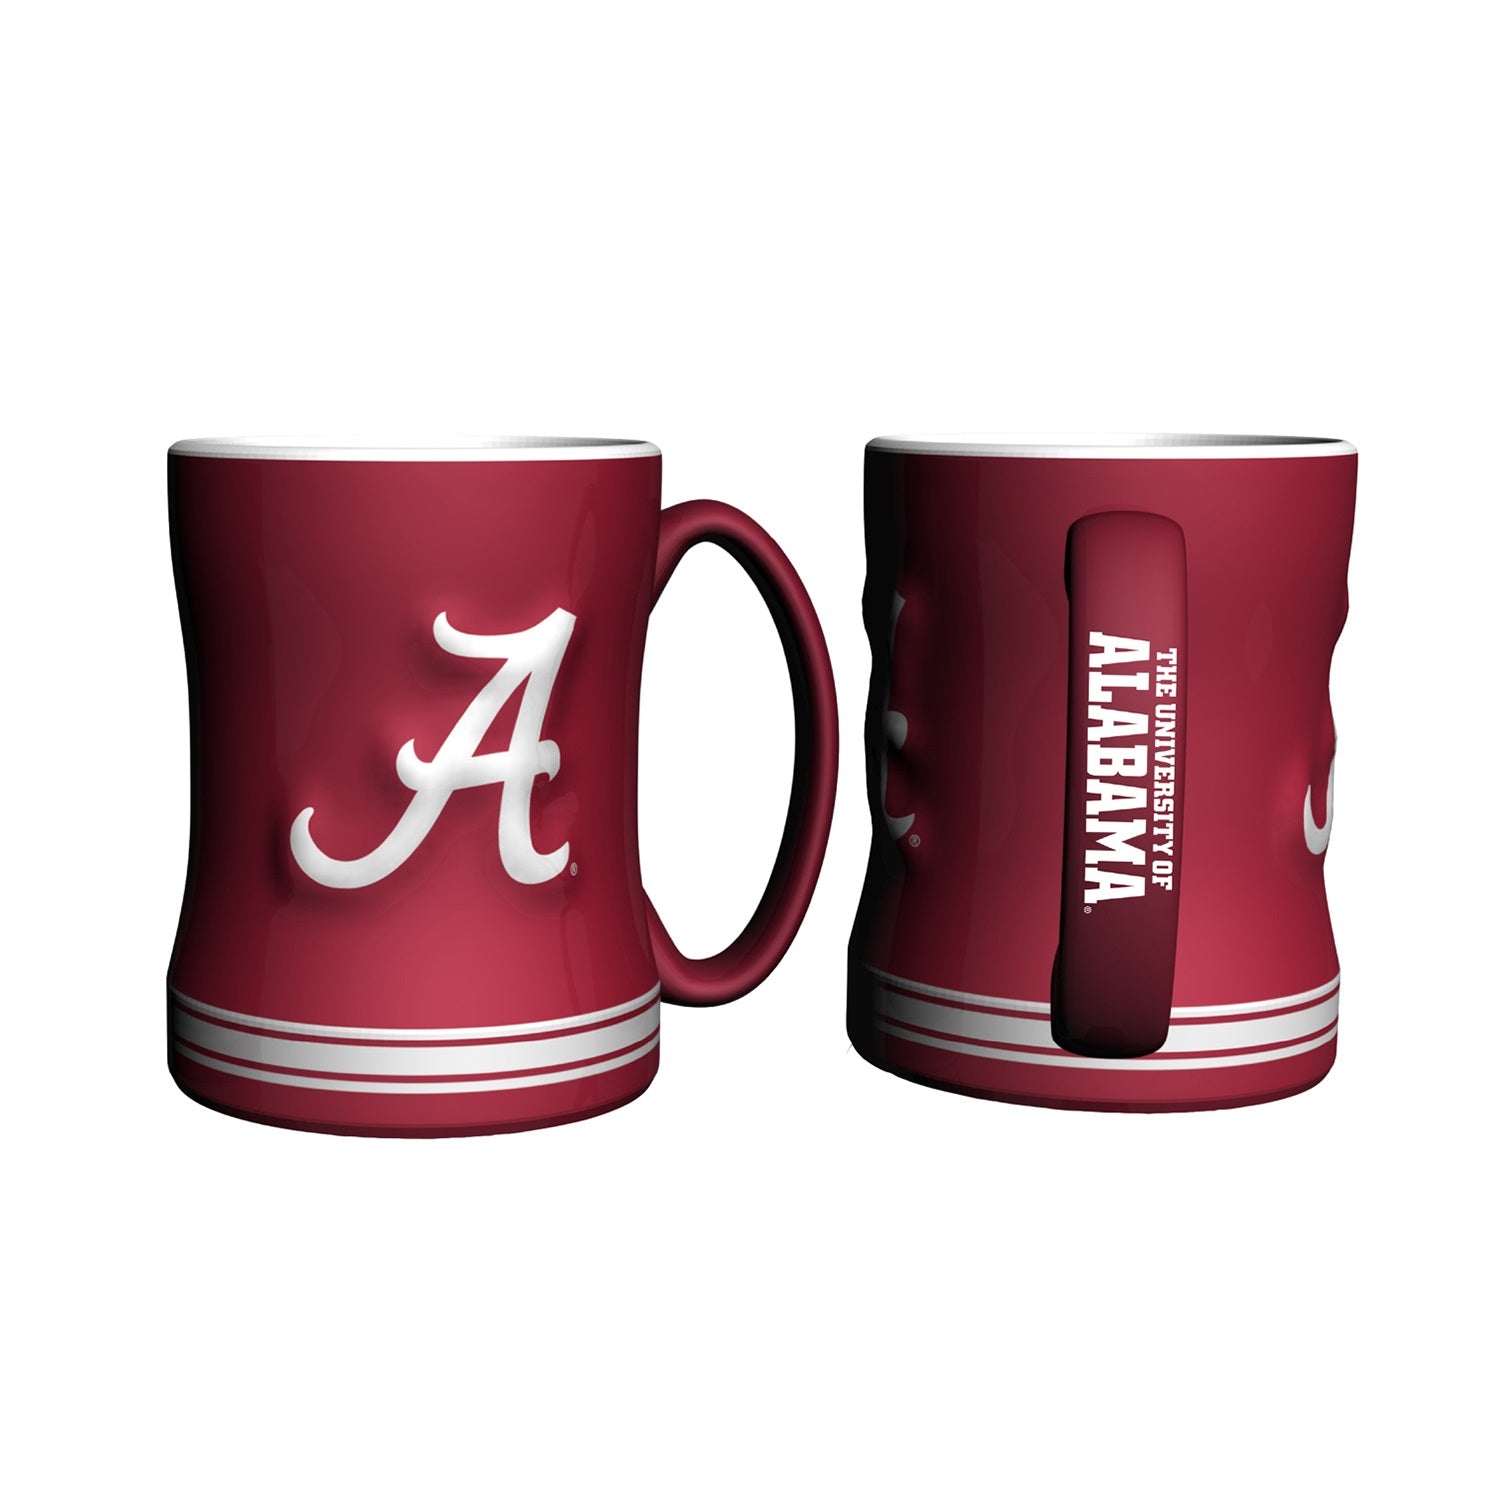 State of Alabama Coffee Mug